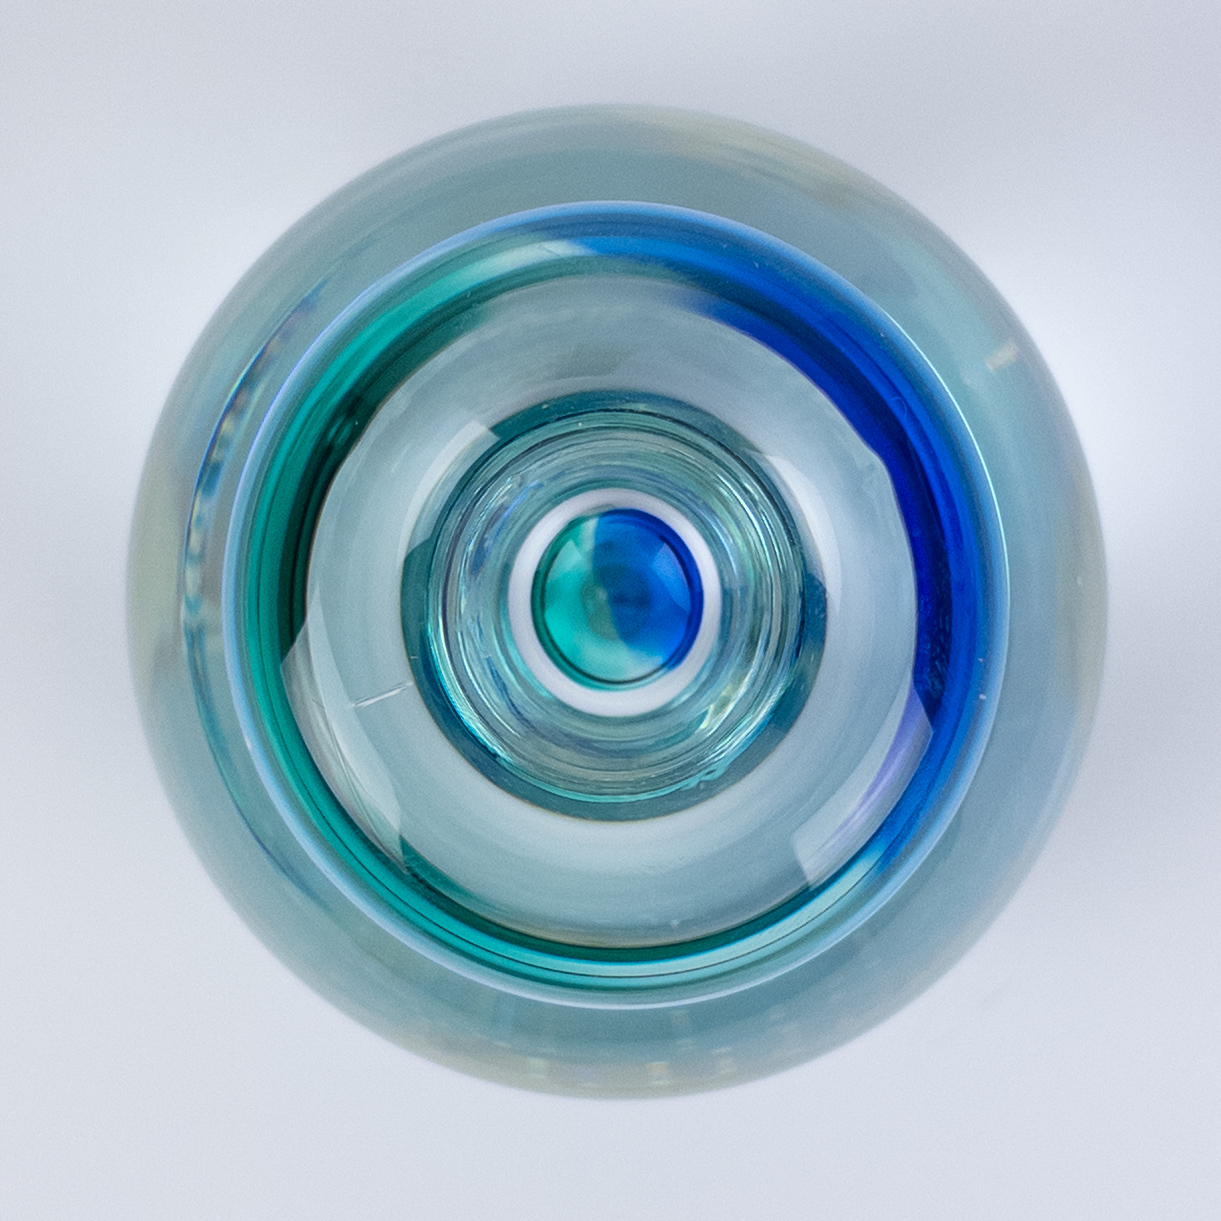 Steninge Slott Sweden Planet Earth Art Glass Candle Holder